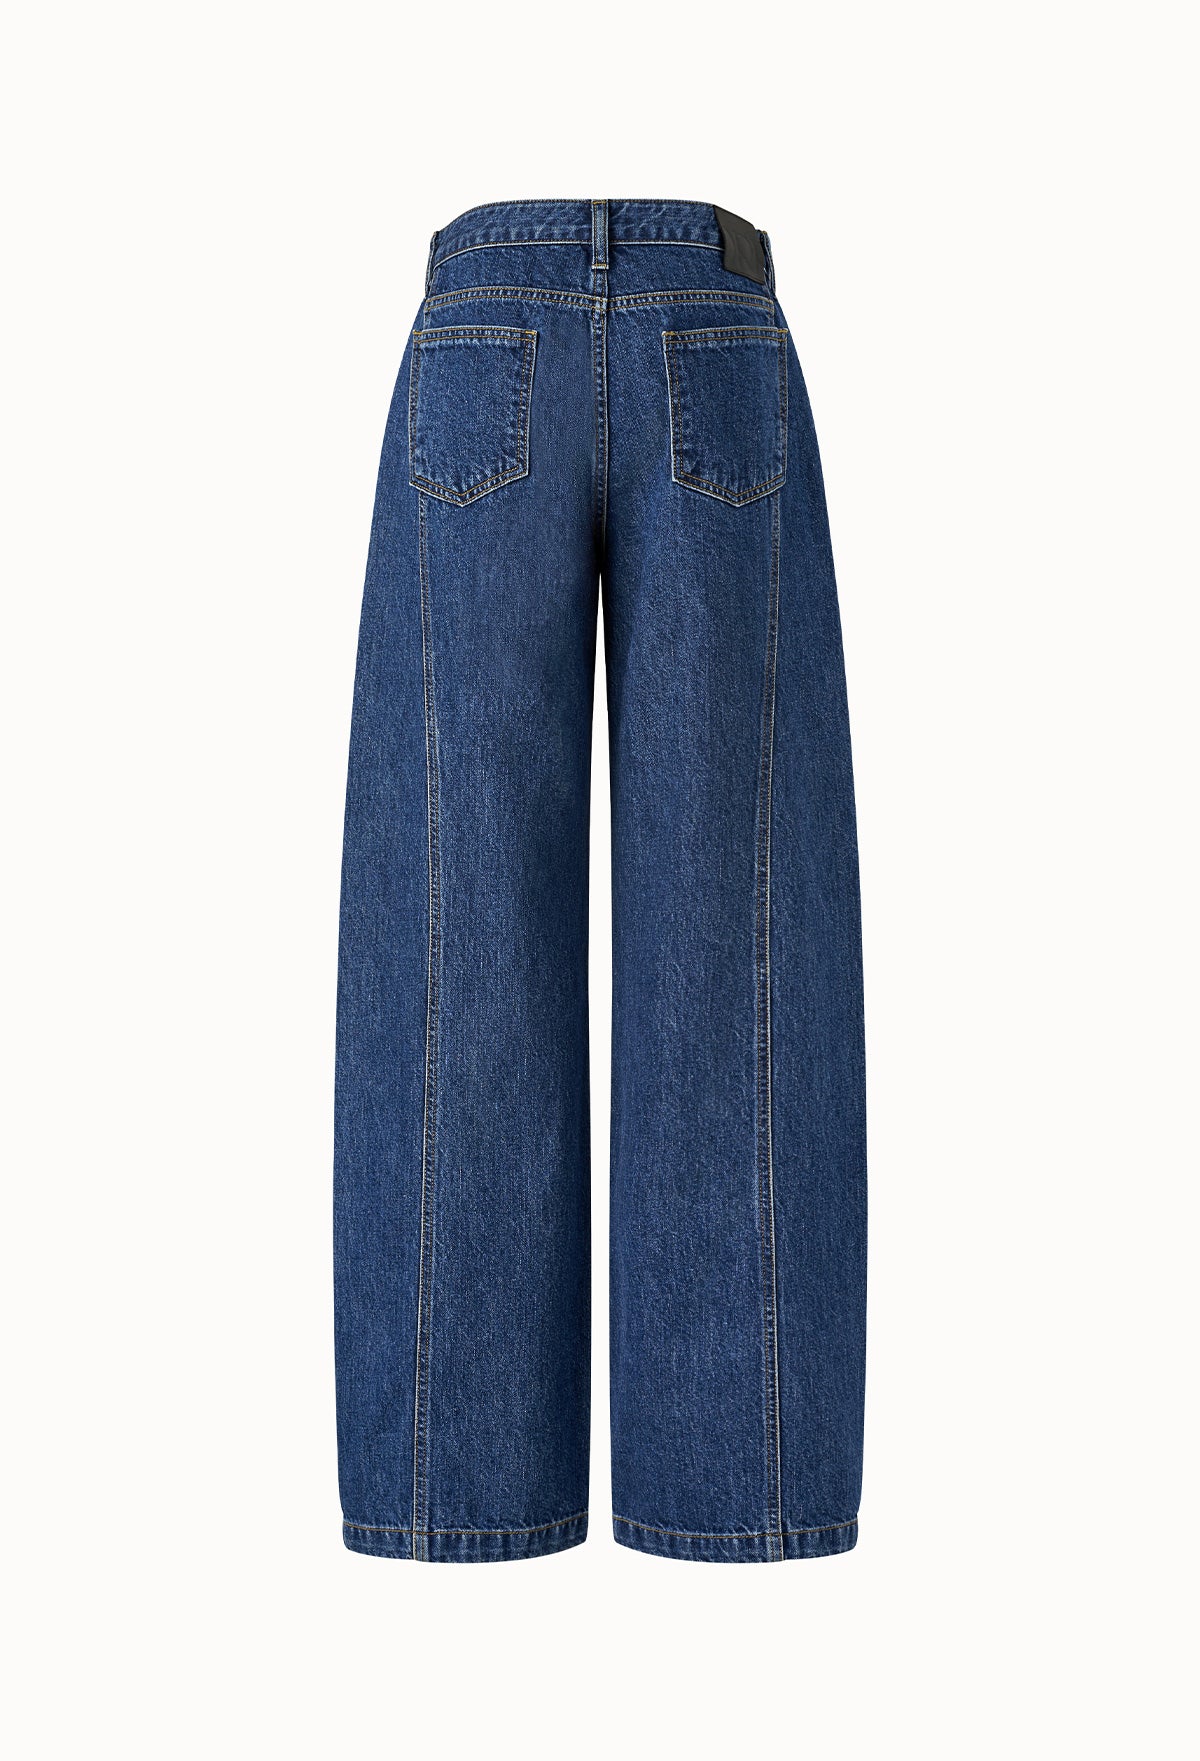 761 Low-rise Denim Jeans (Short)